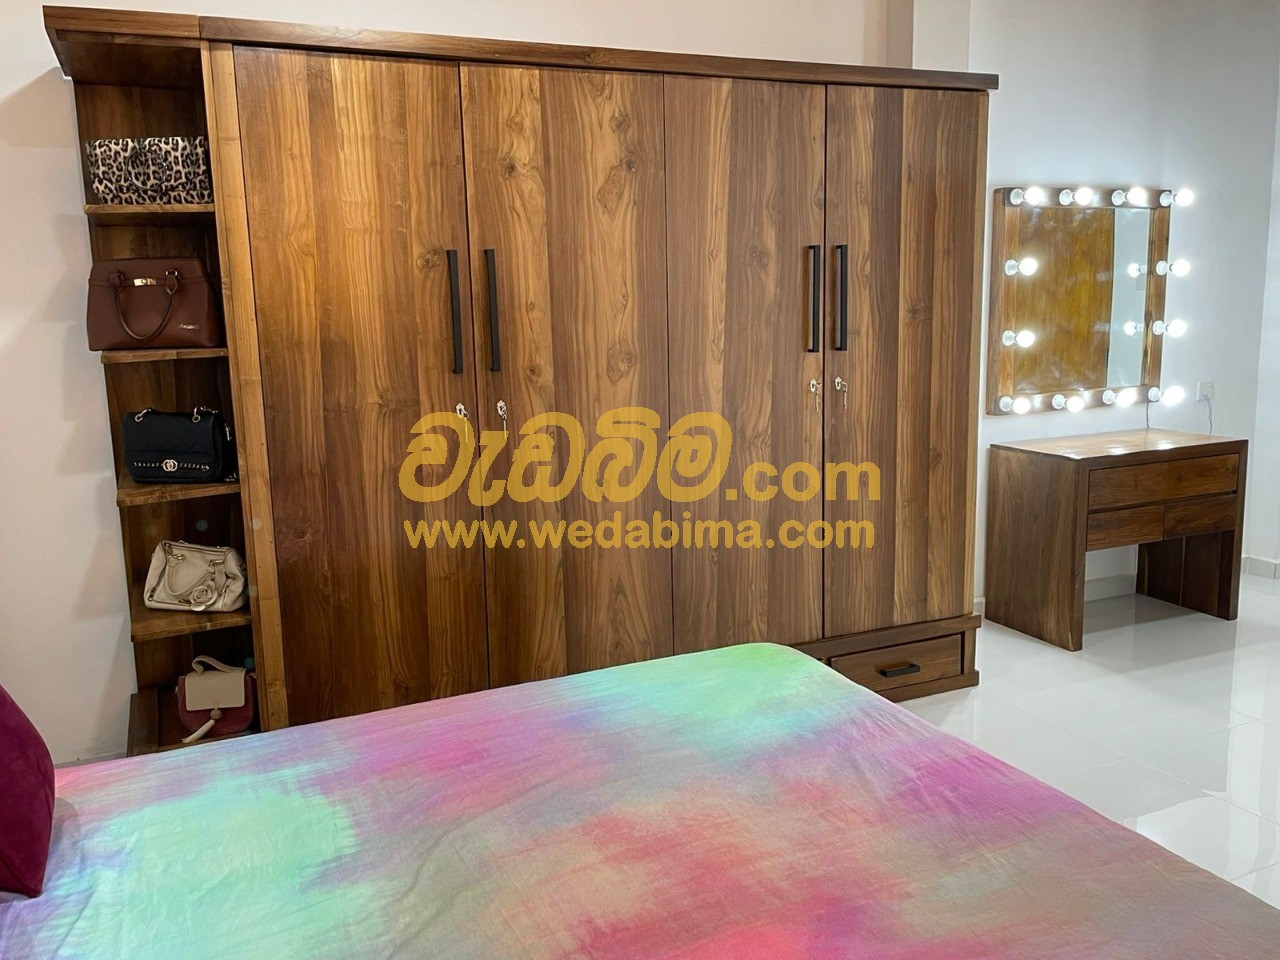 Cover image for Bedroom Set Price in Sri Lanka